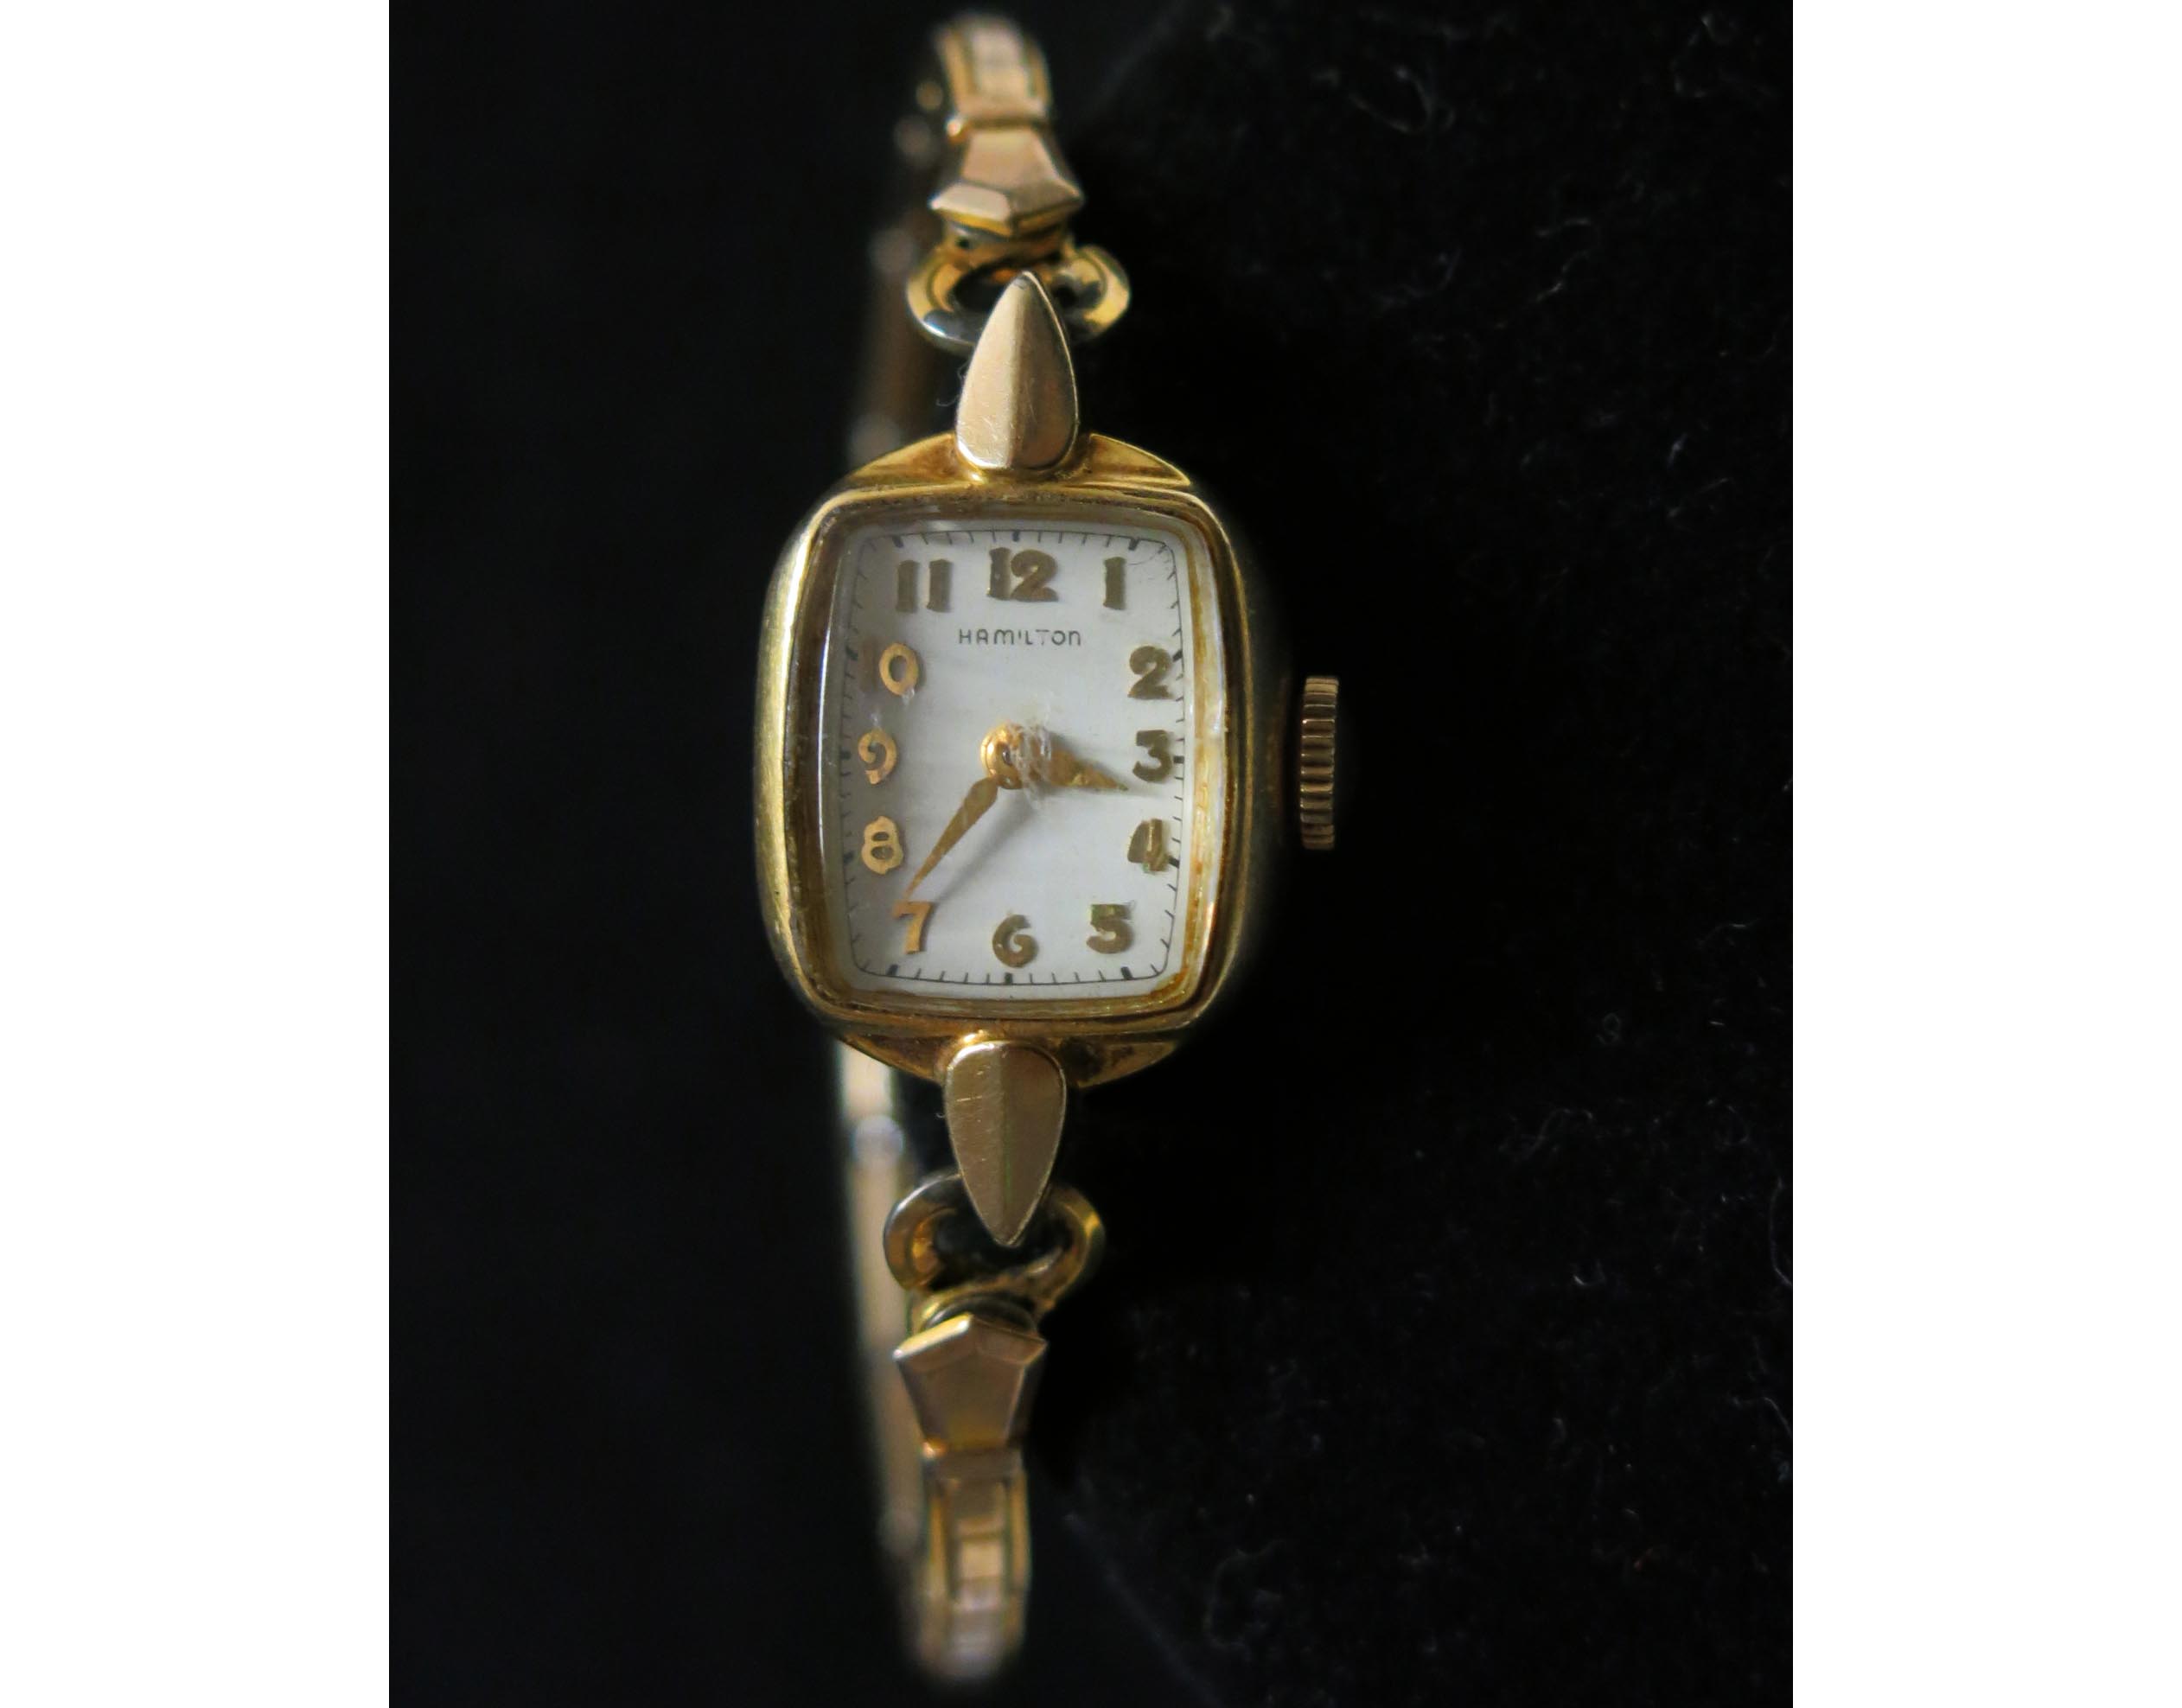 1955 Lady Hamilton 757 22 Jewel Wrist Watch